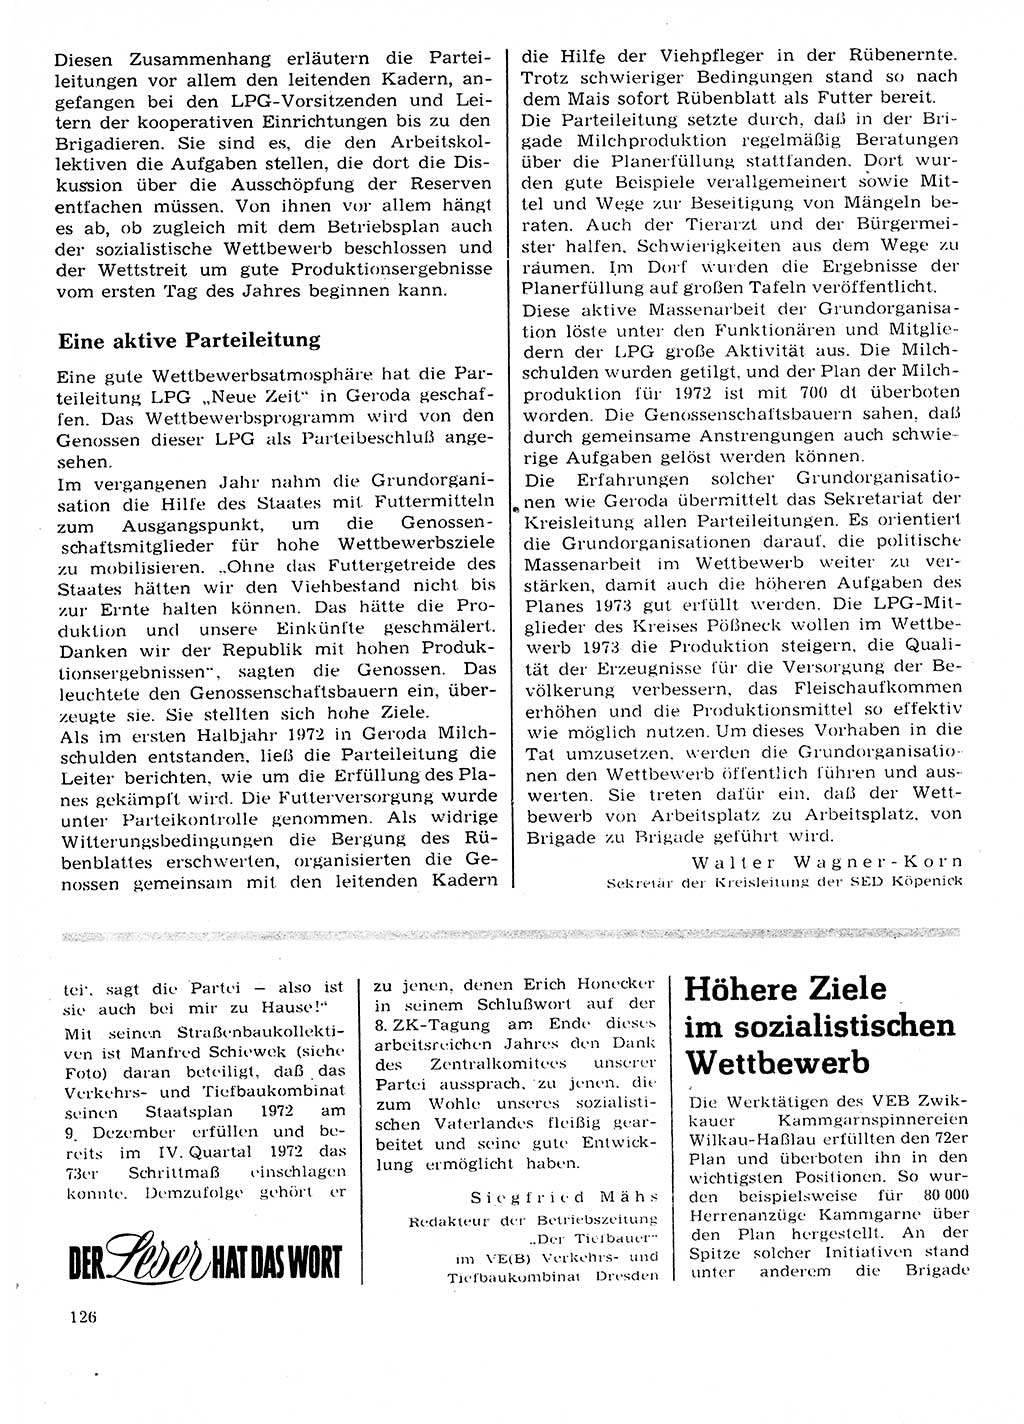 Neuer Weg (NW), Organ des Zentralkomitees (ZK) der SED (Sozialistische Einheitspartei Deutschlands) für Fragen des Parteilebens, 28. Jahrgang [Deutsche Demokratische Republik (DDR)] 1973, Seite 126 (NW ZK SED DDR 1973, S. 126)